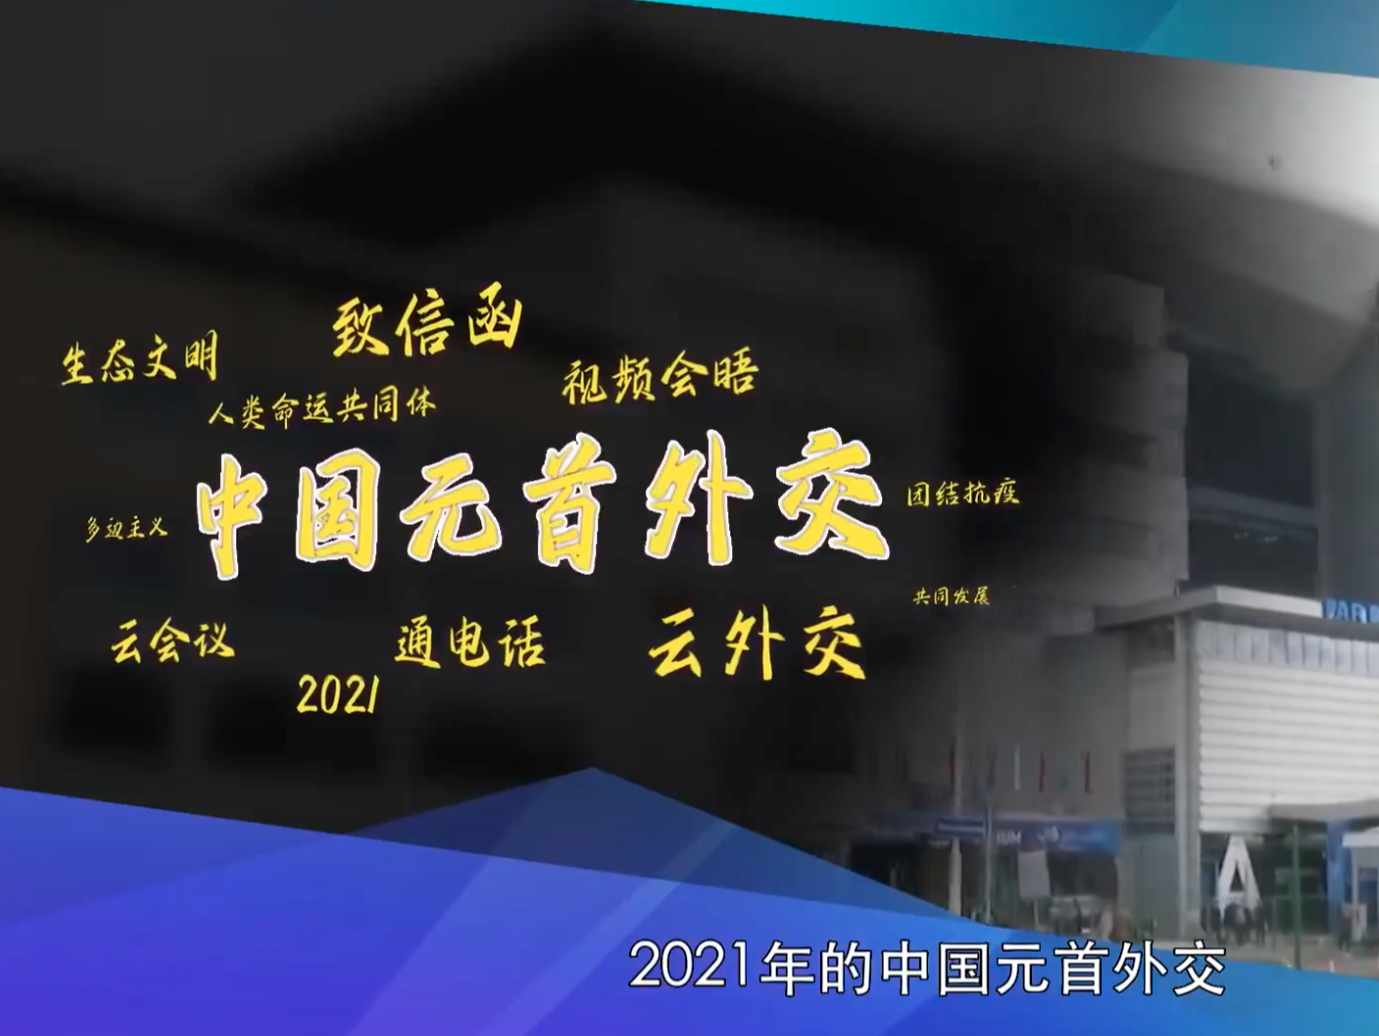 第一报道·全景云图 | 2021年中国元首外交关键词